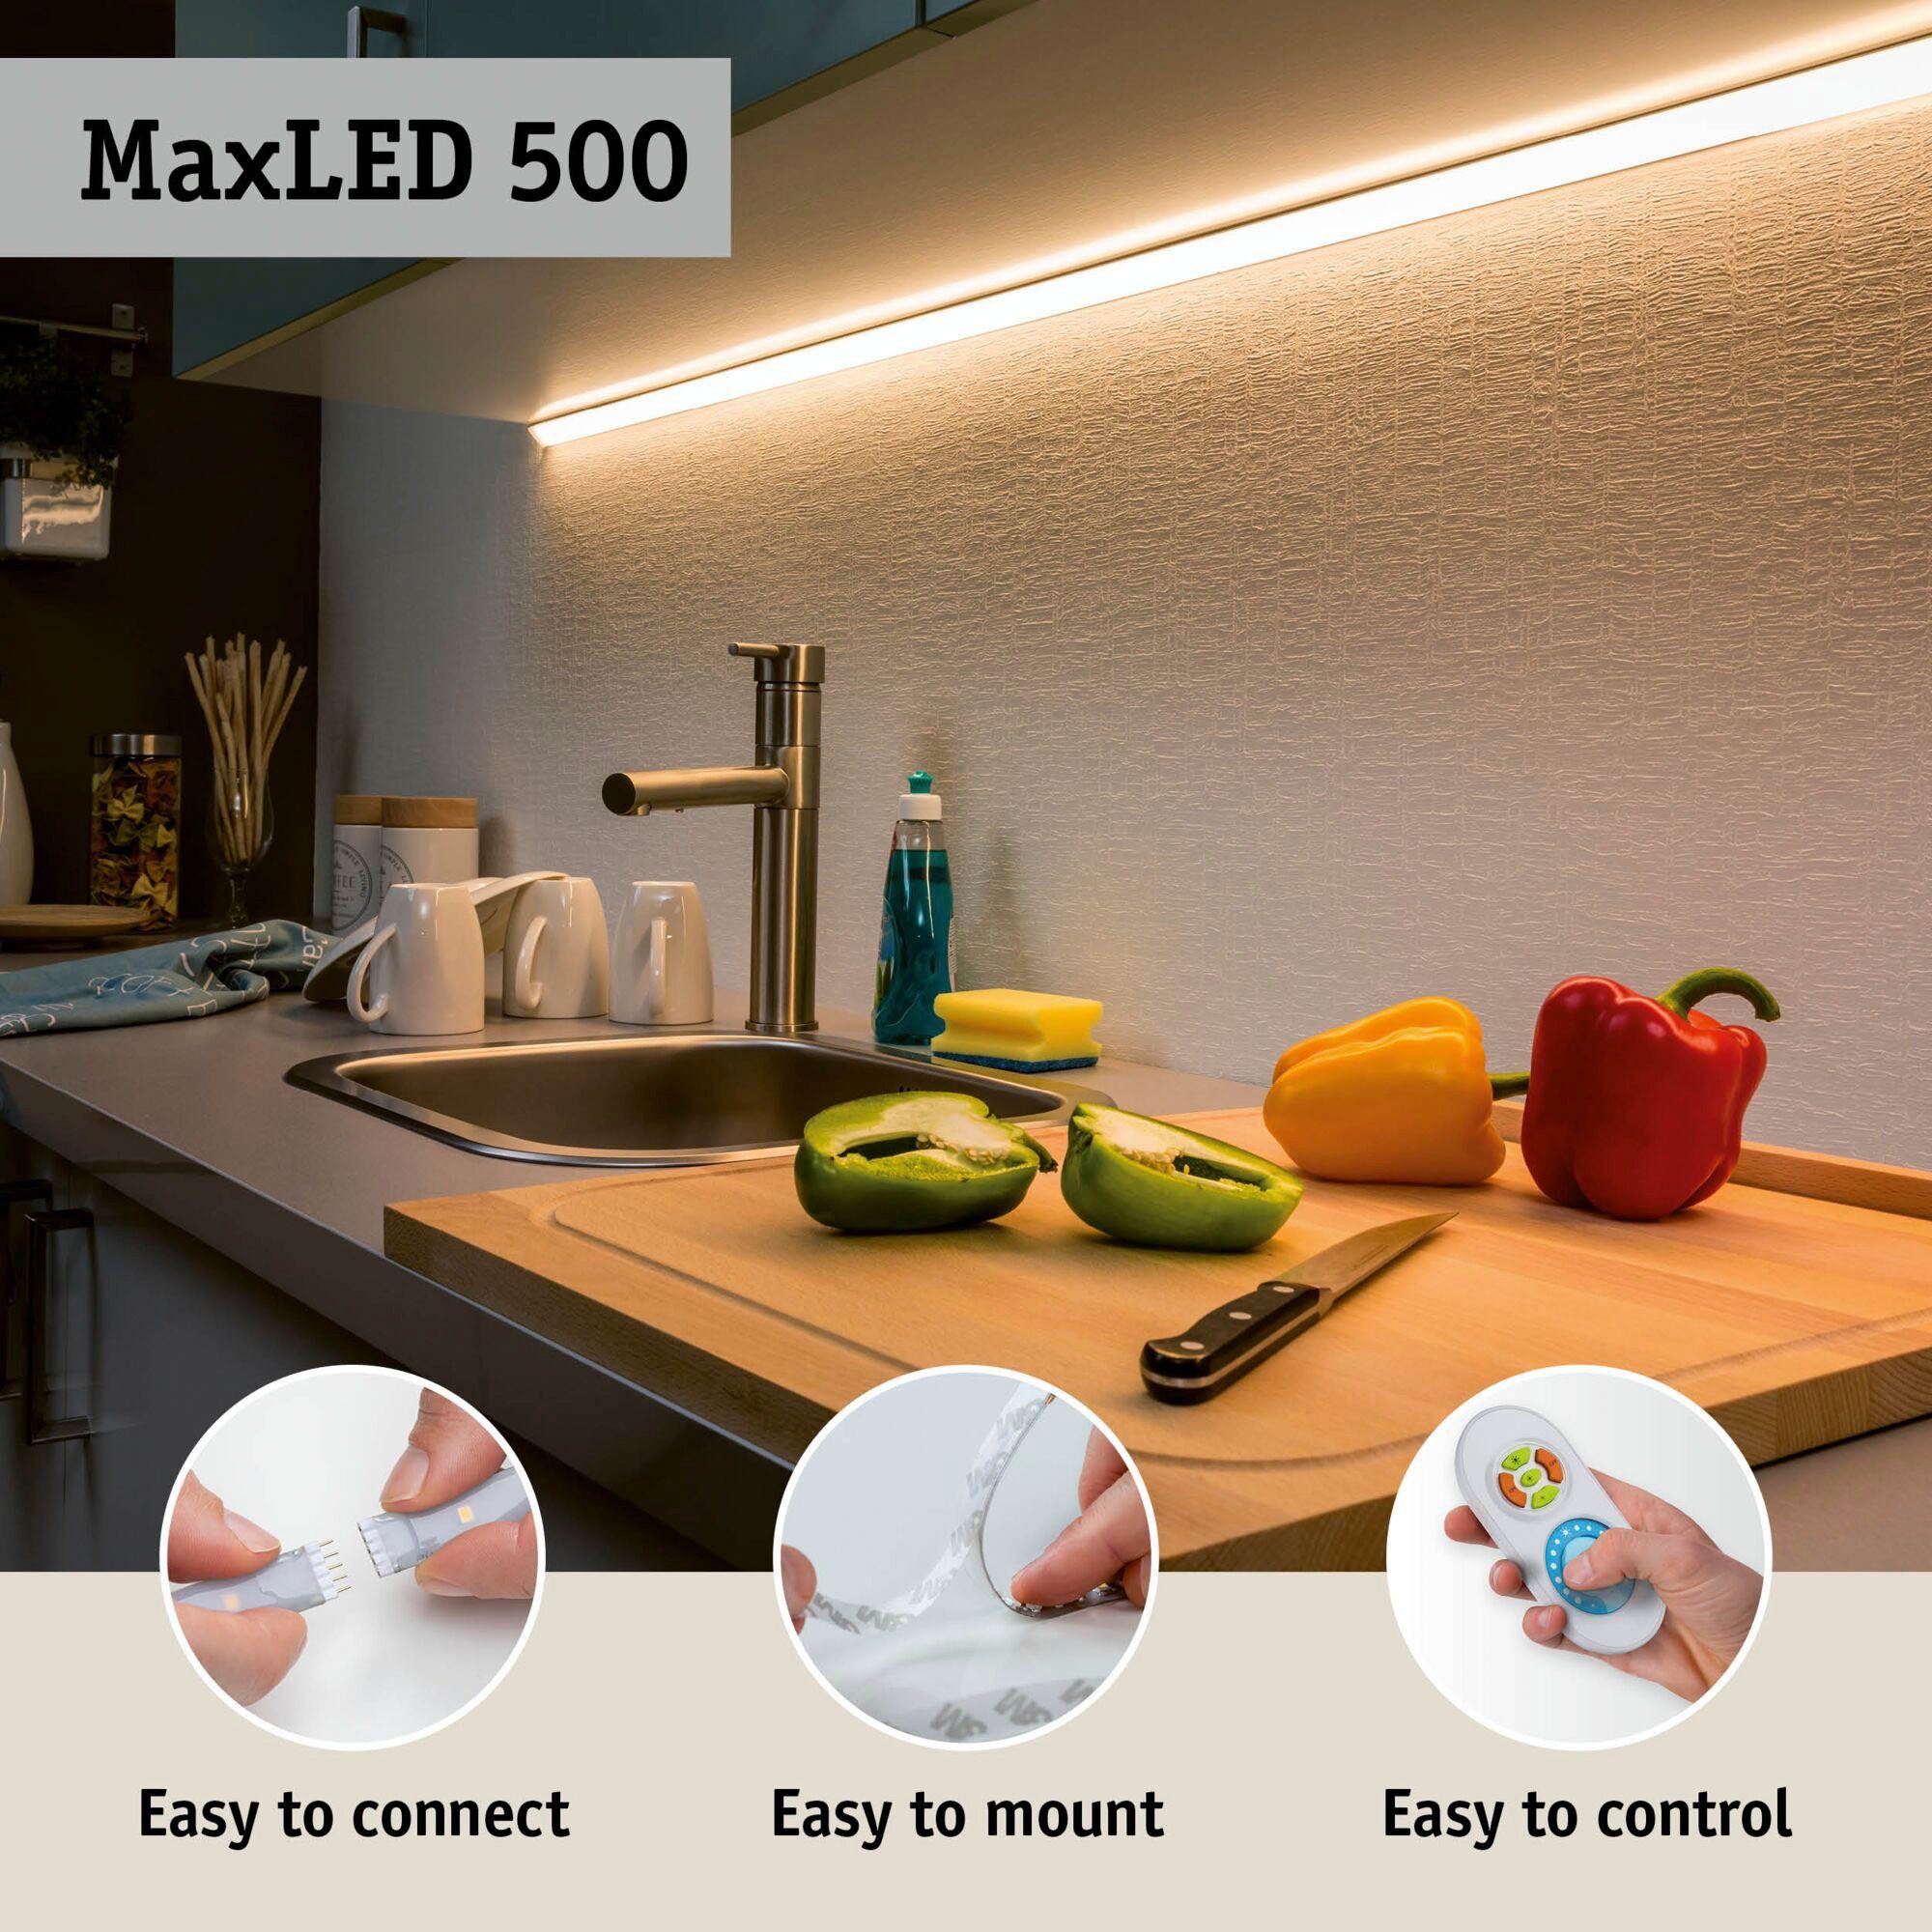 Paulmann LED-Streifen MaxLED 500 50W Basisset 6500K, Smart 1-flammig, 10m Home 550lm/m Tageslichtweiß Basisset